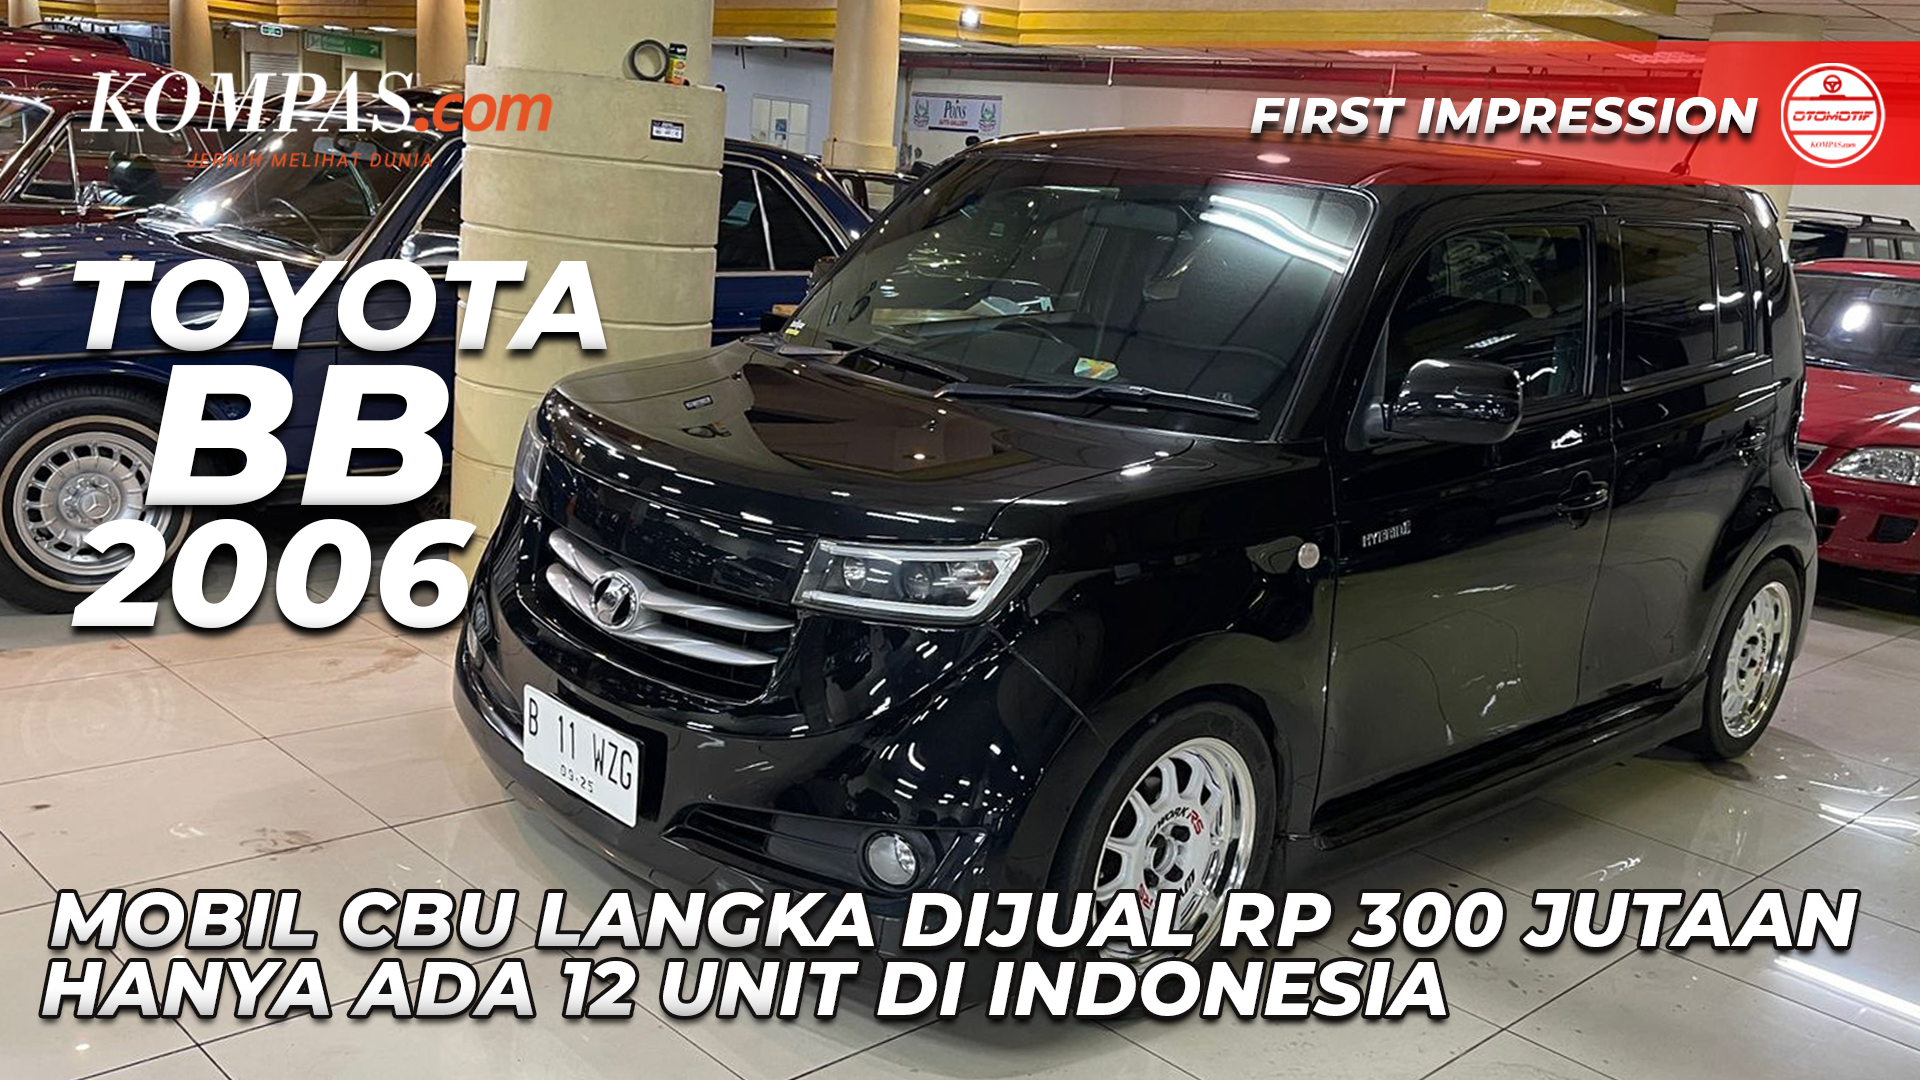 TOYOTA BB 2006 | Mobil CBU Langka Dijual Rp 300 Jutaan Hanya Ada 12 Unit Di Indonesia